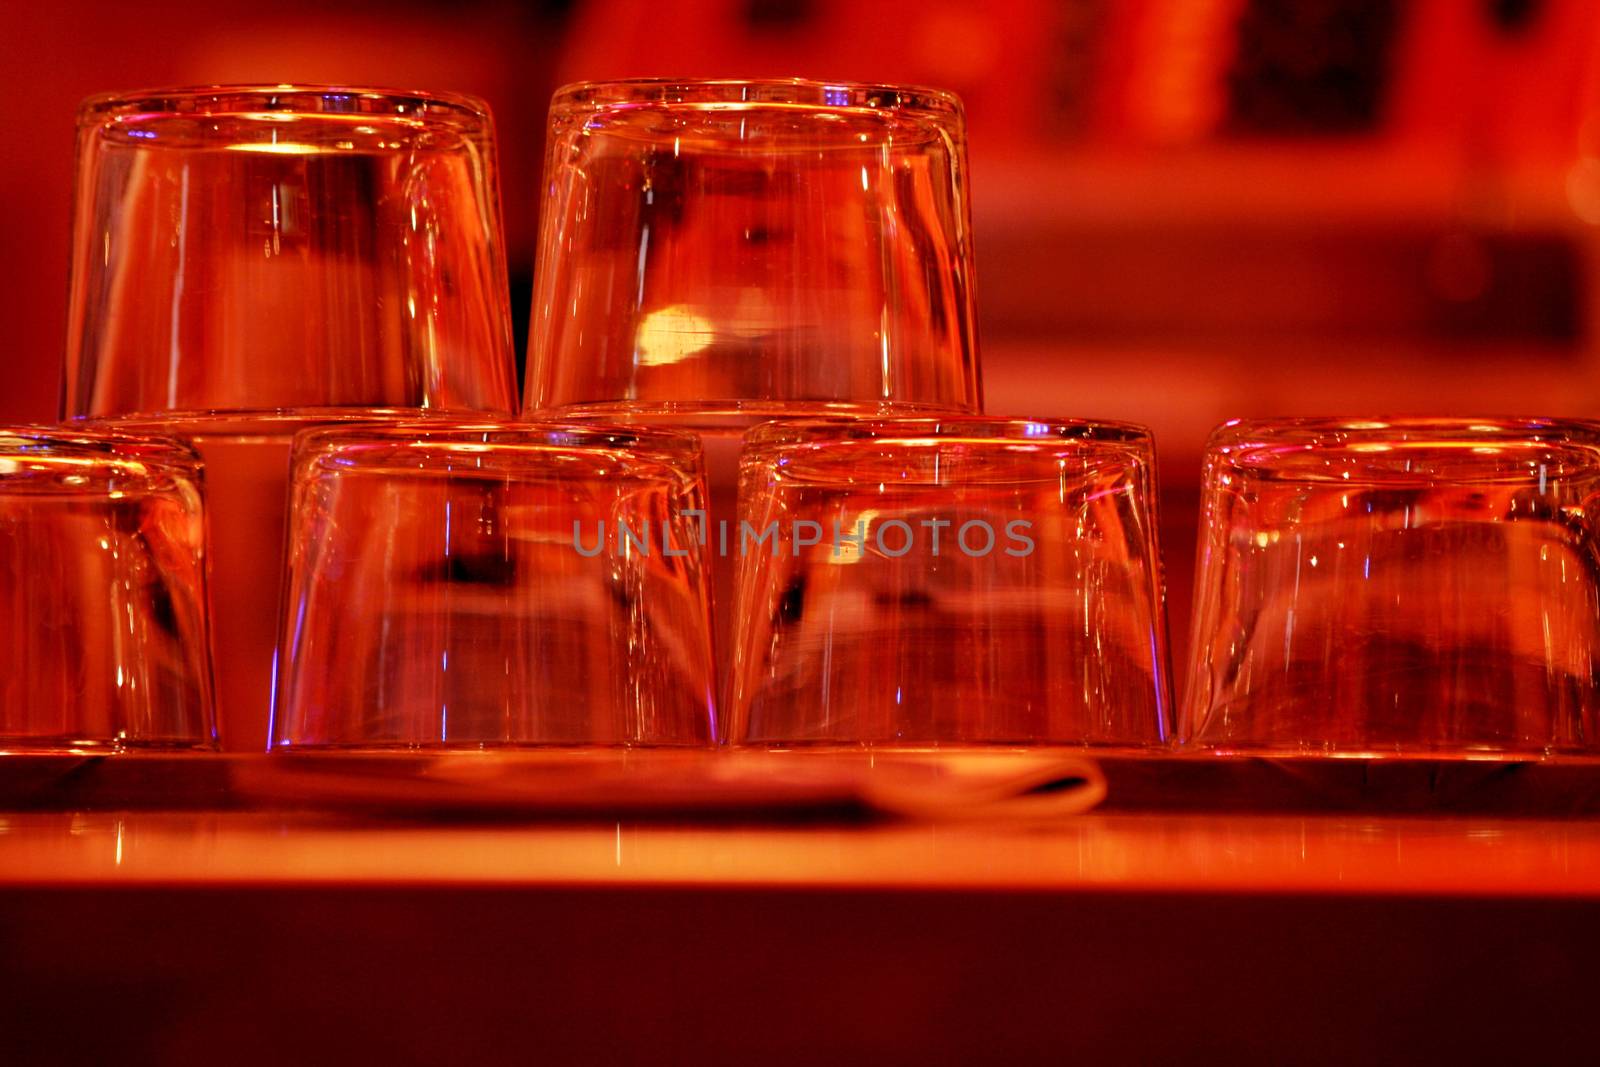 Upturned wine glasses in restaurant bar close-up by edwardolive